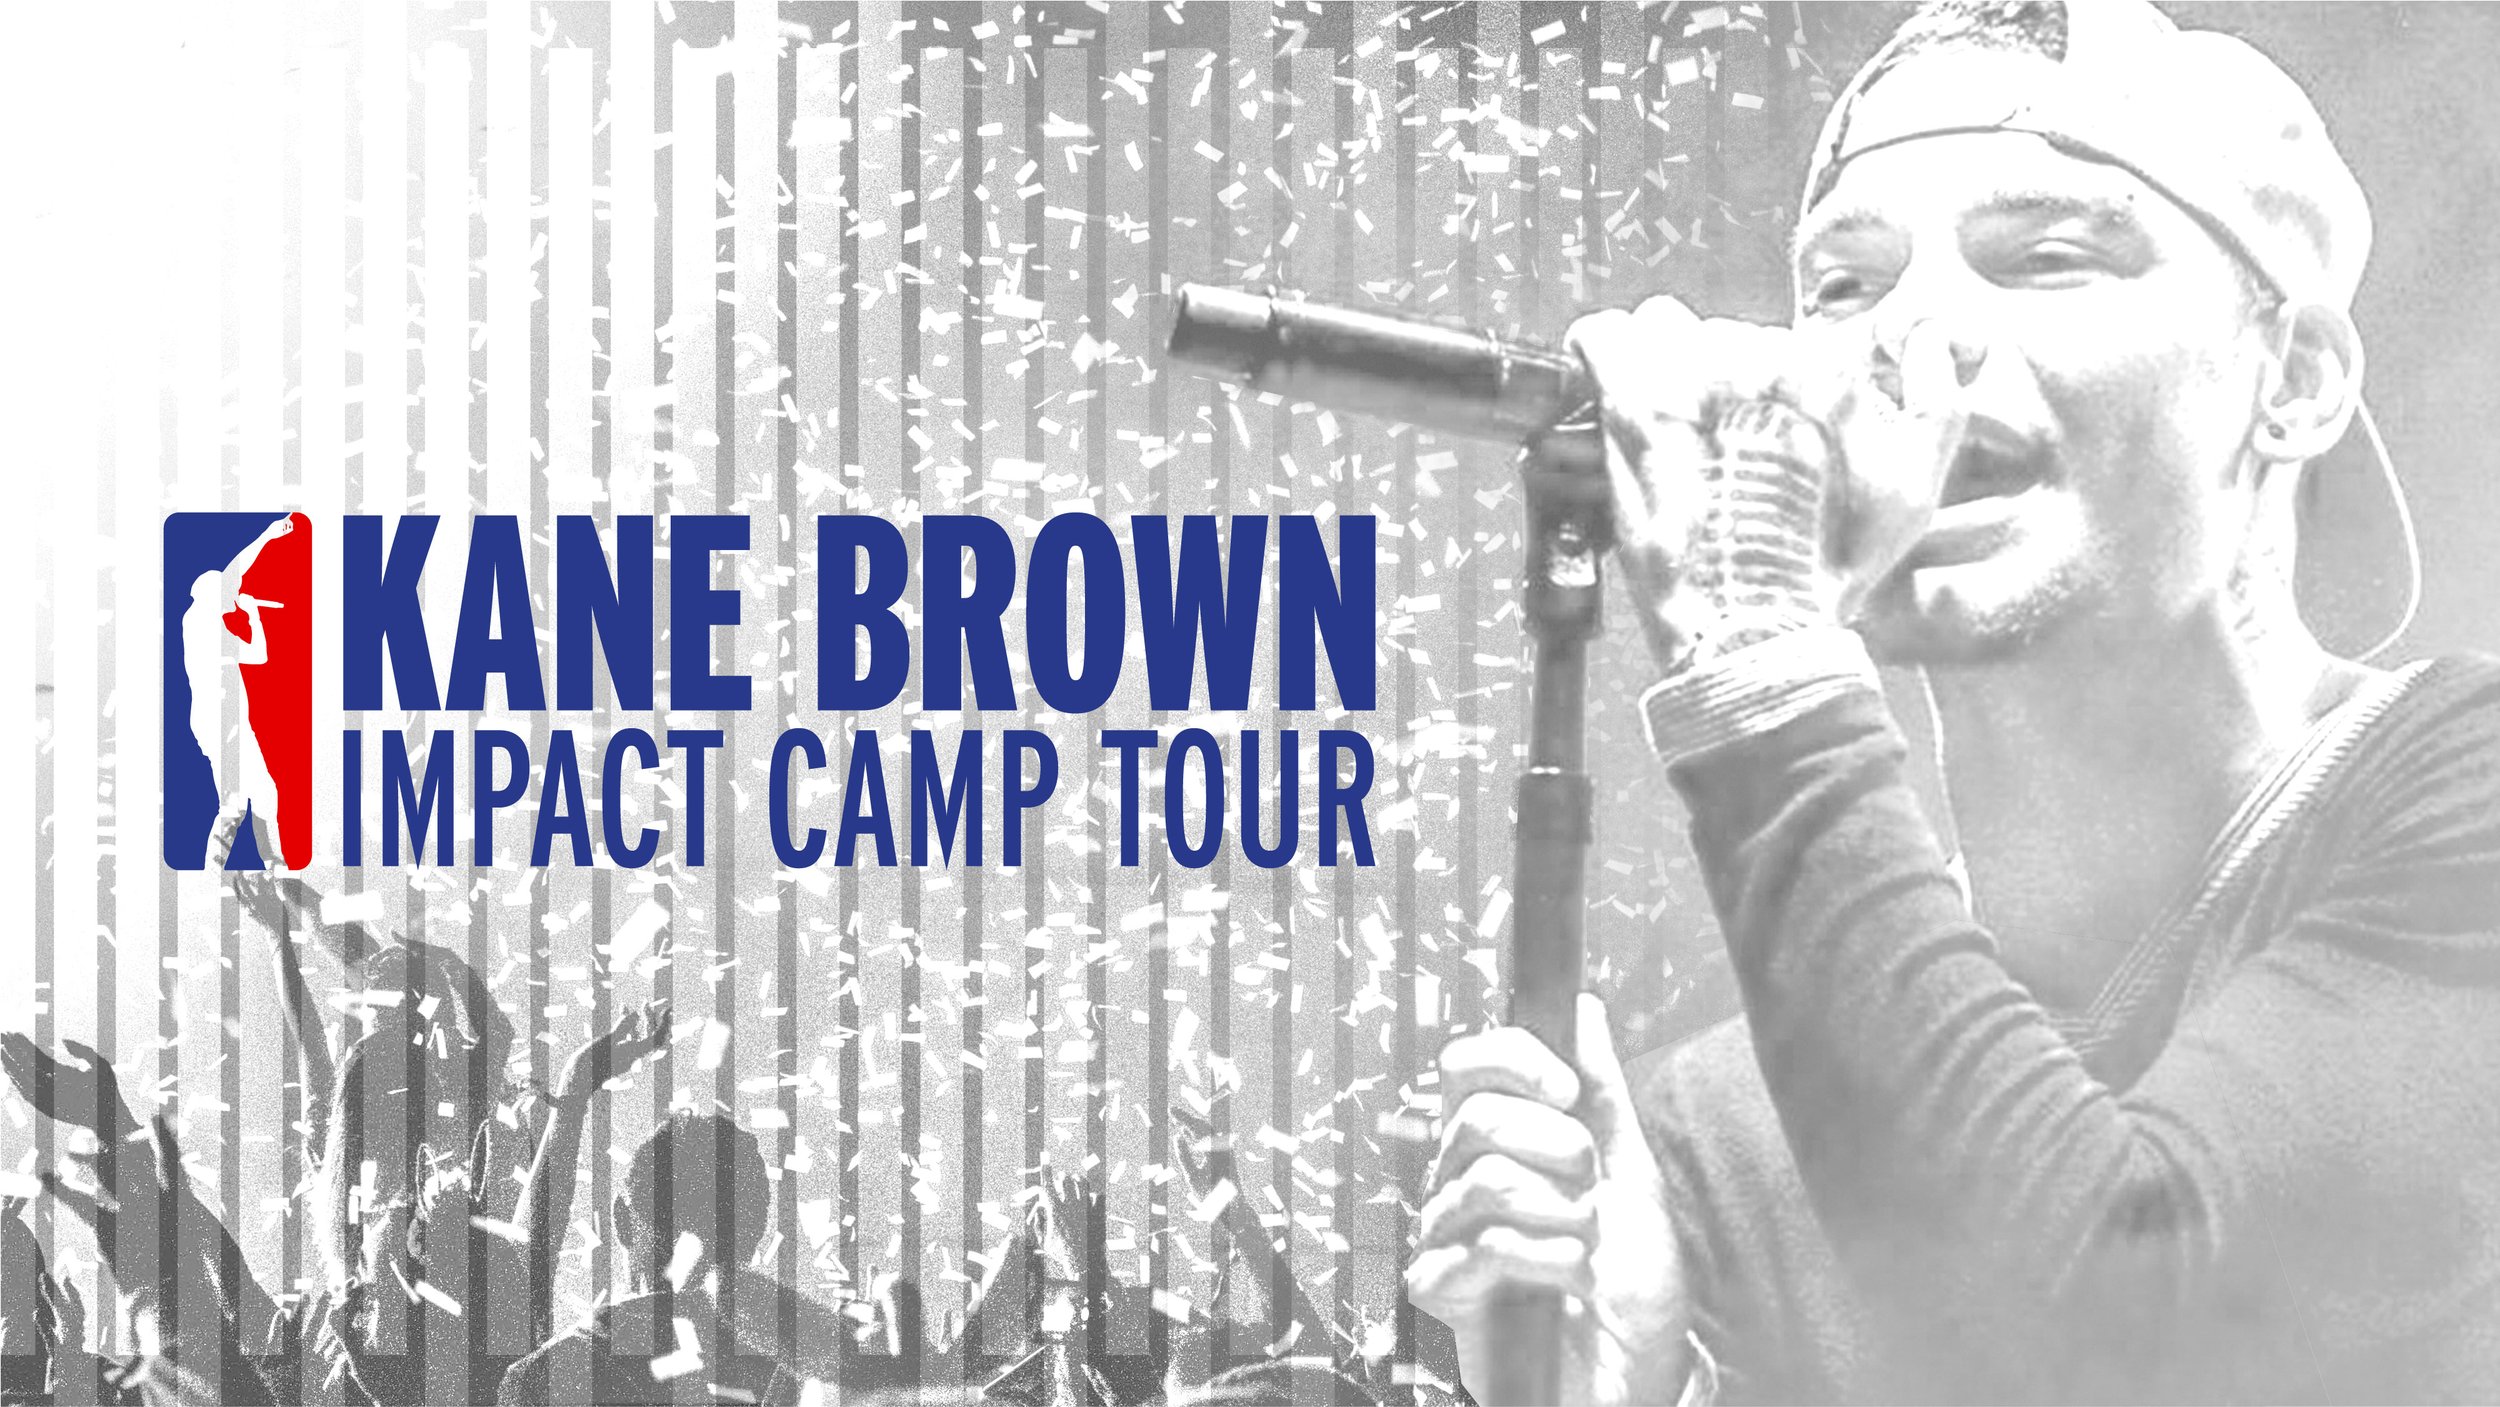 Kane Brown + NBA - Kane Brown Impact Camp Tour Logo